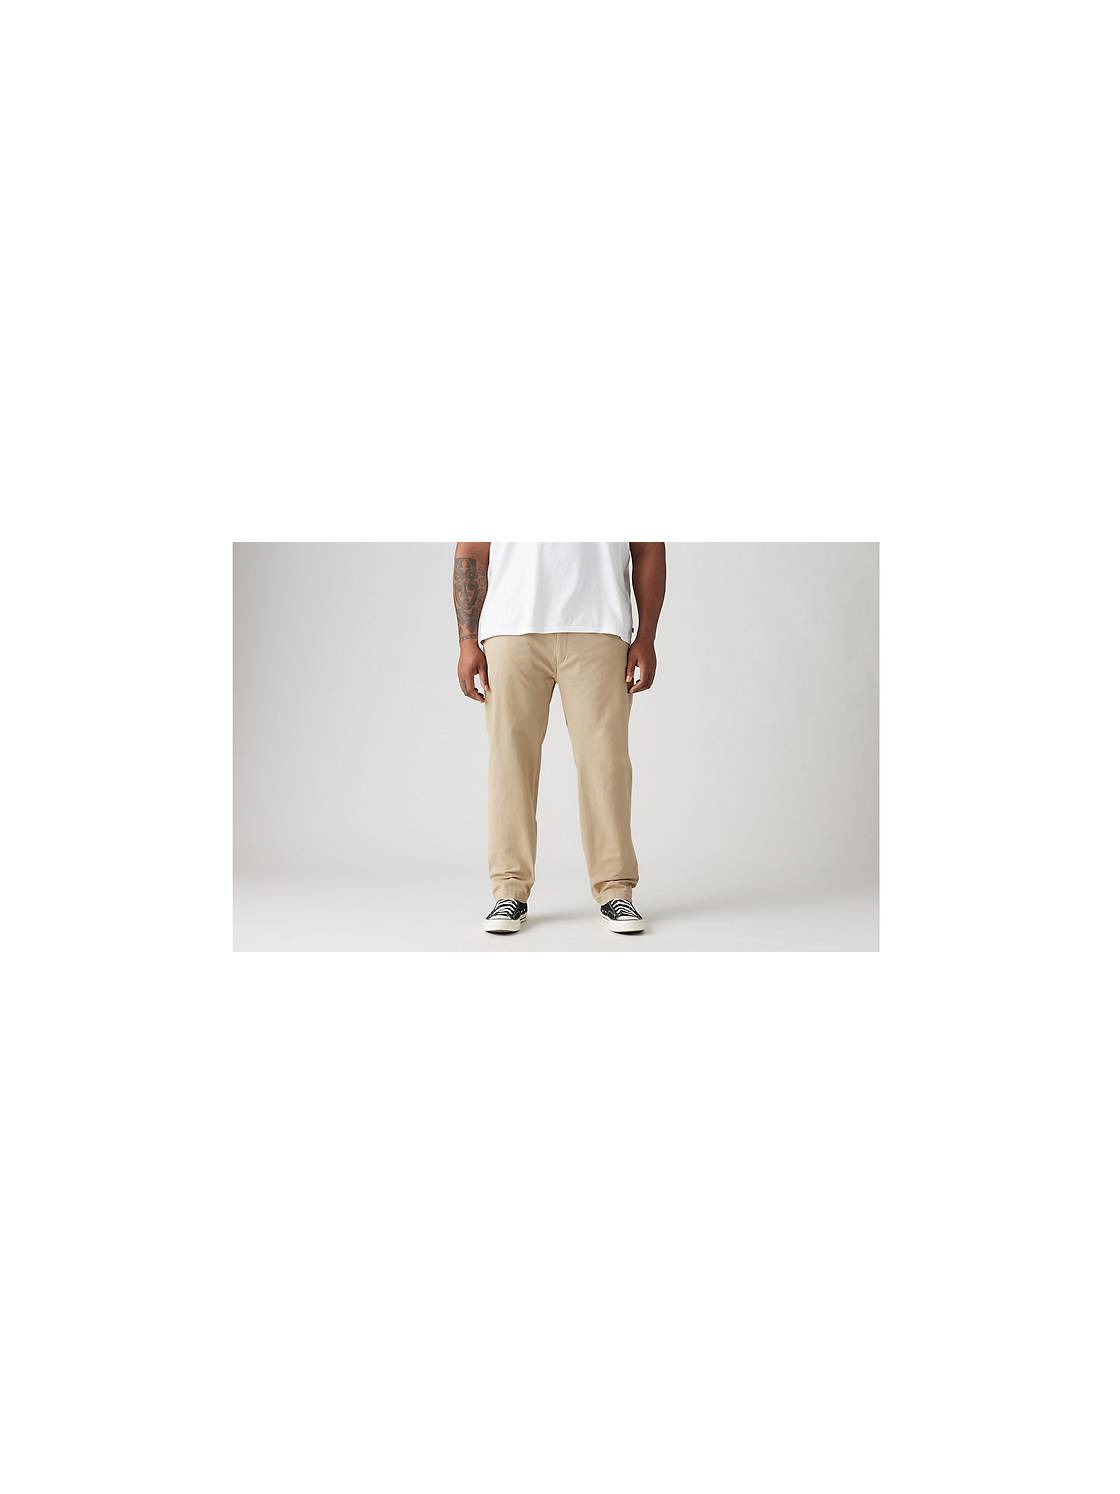 XX Chino Standard Taper Pants (Big & Tall) 1